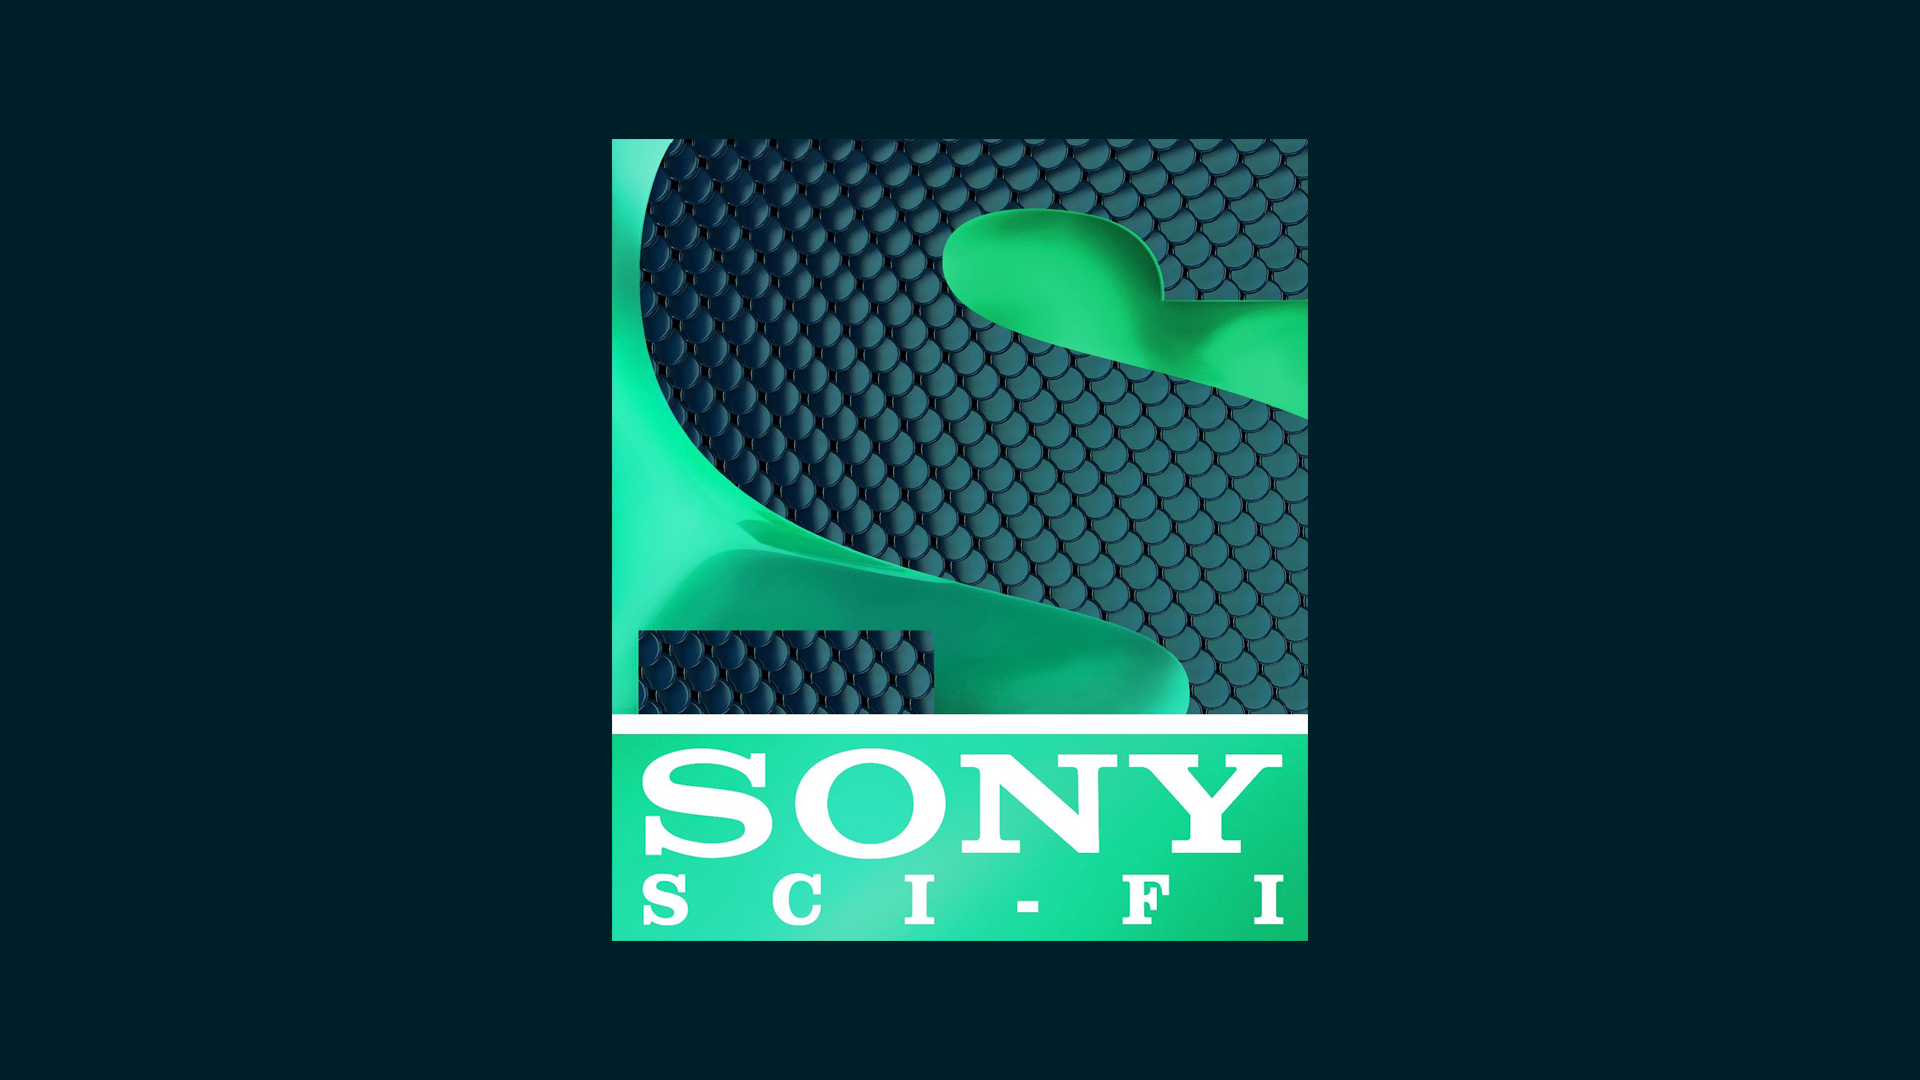 Sony Sci-fi